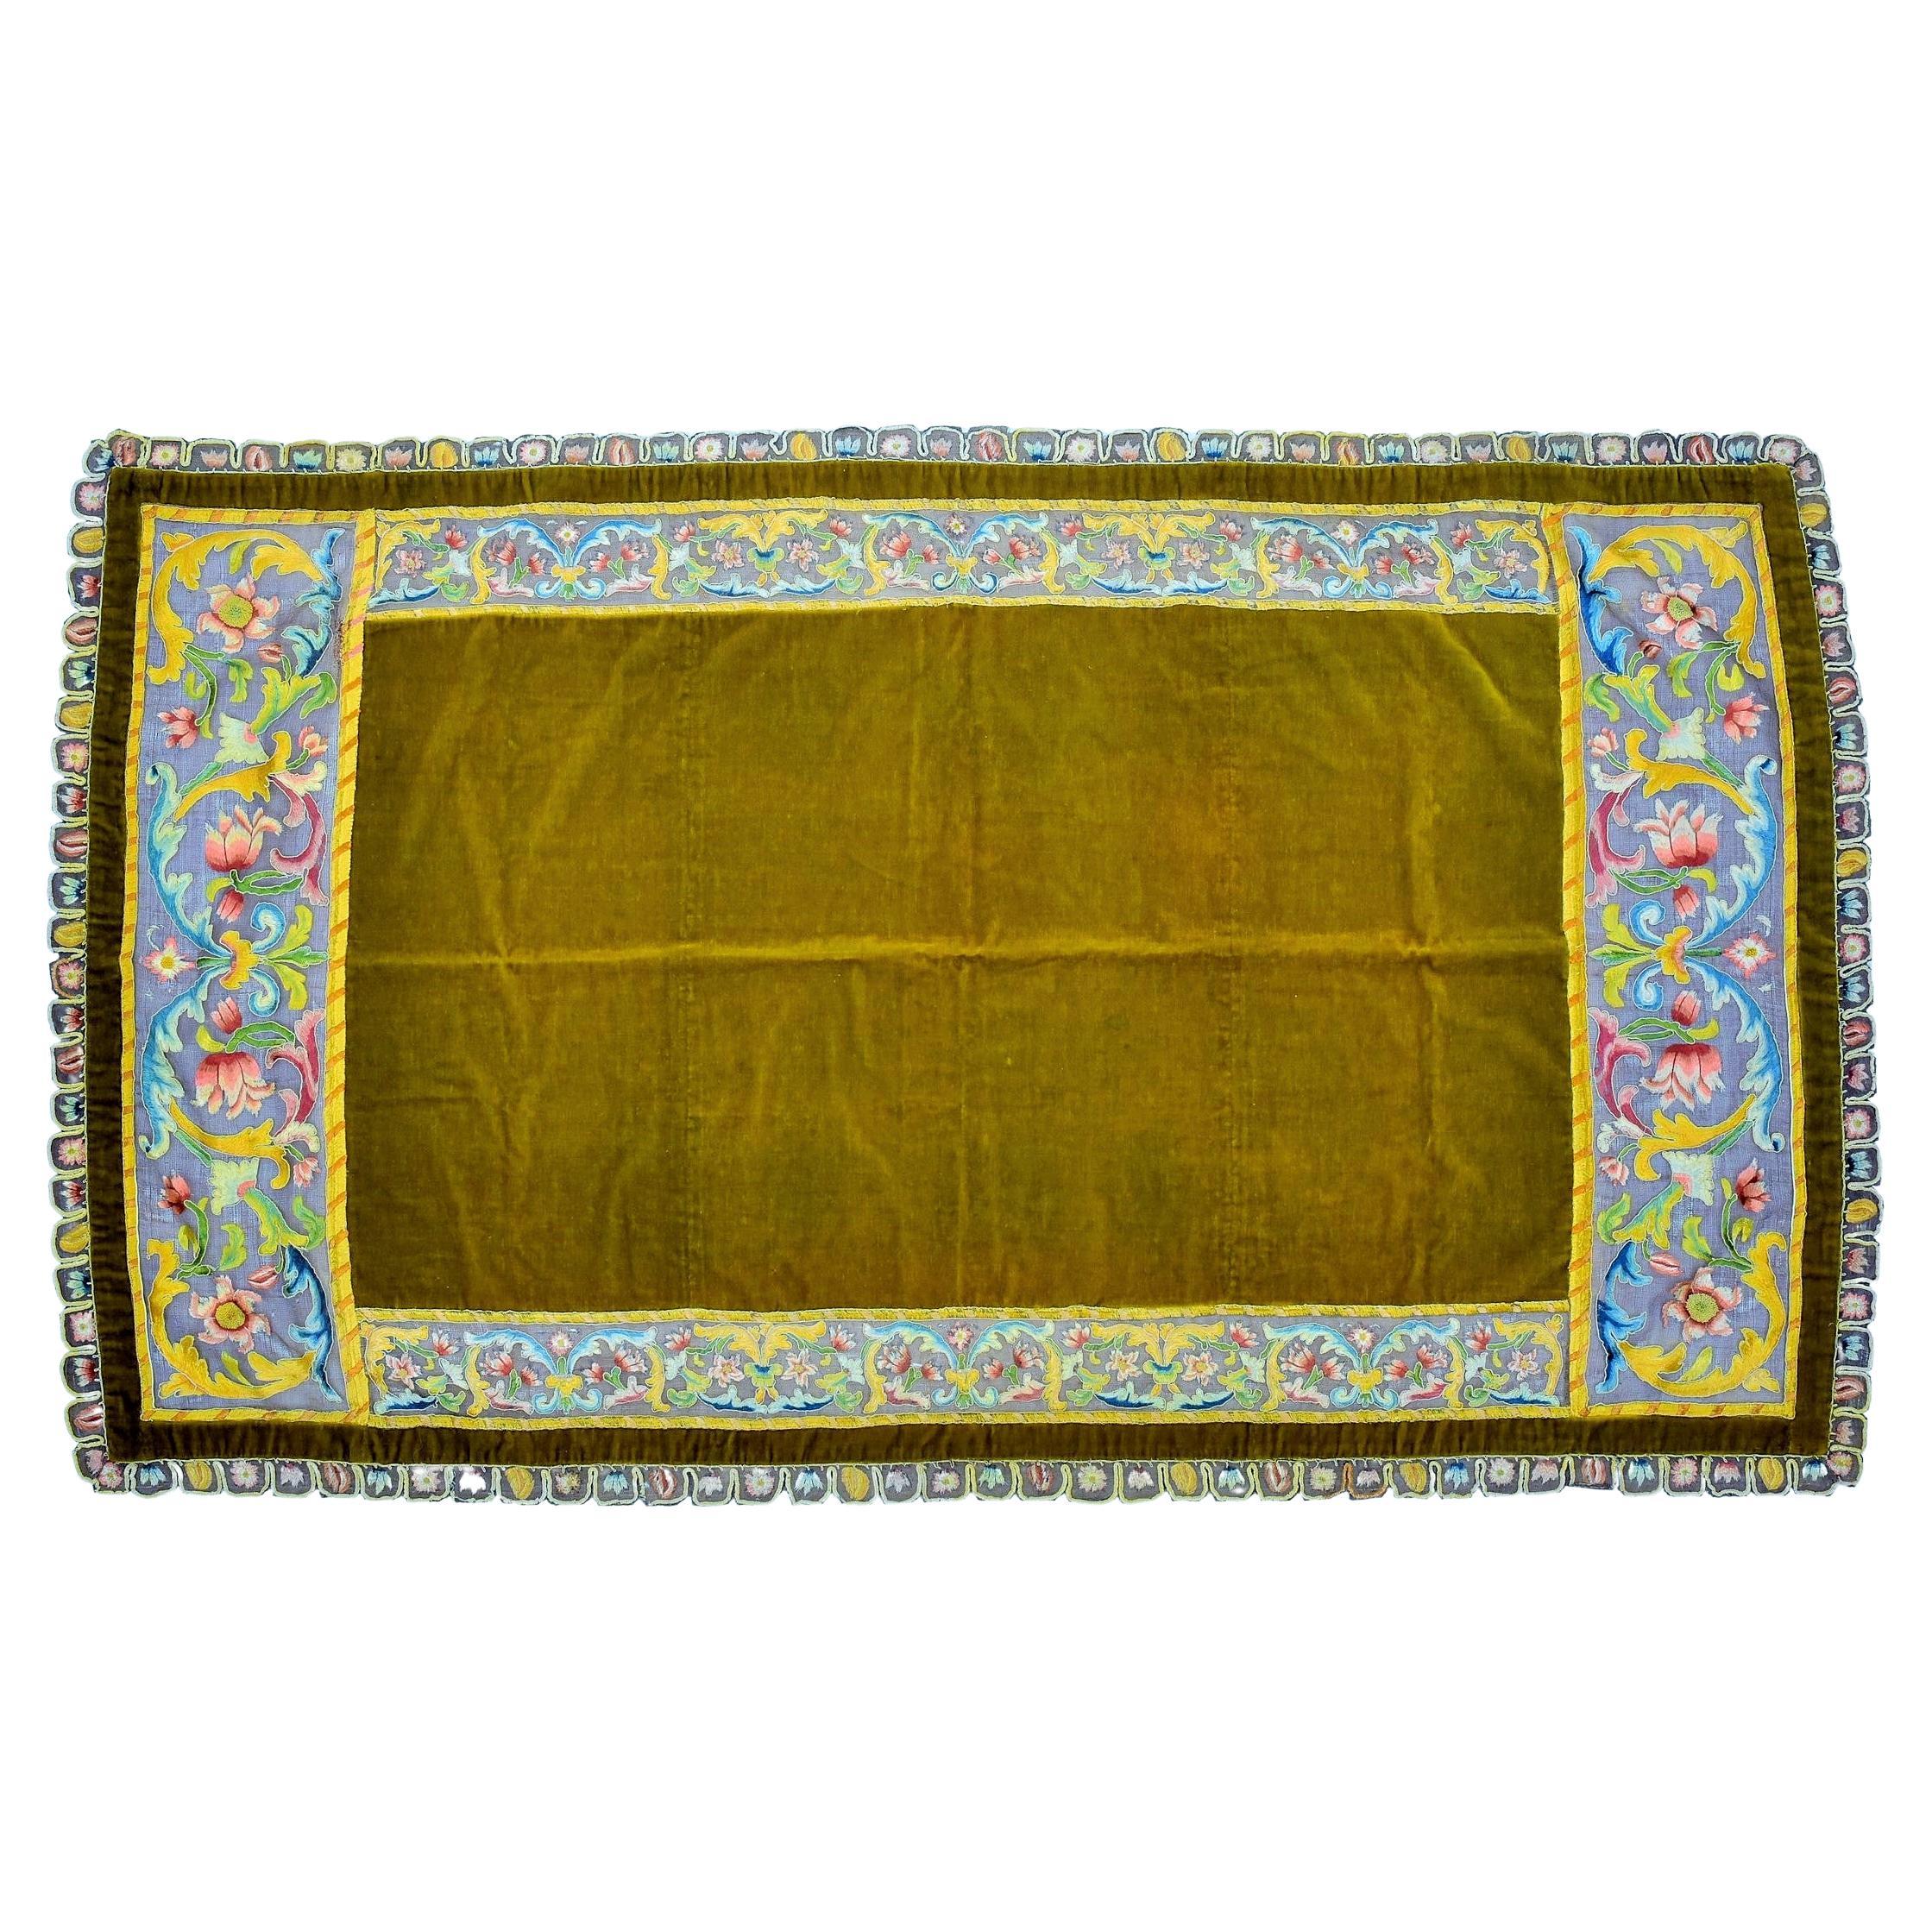 Fin du XVIIe siècle pour la broderie
XIXème siècle pour le montage du velours

Italie

Rare tapis de table en velours de soie vert-jaune coupé (XIXe siècle) à larges bandes et festons de broderie de soie en peinture à l'aiguille sur voile de lin